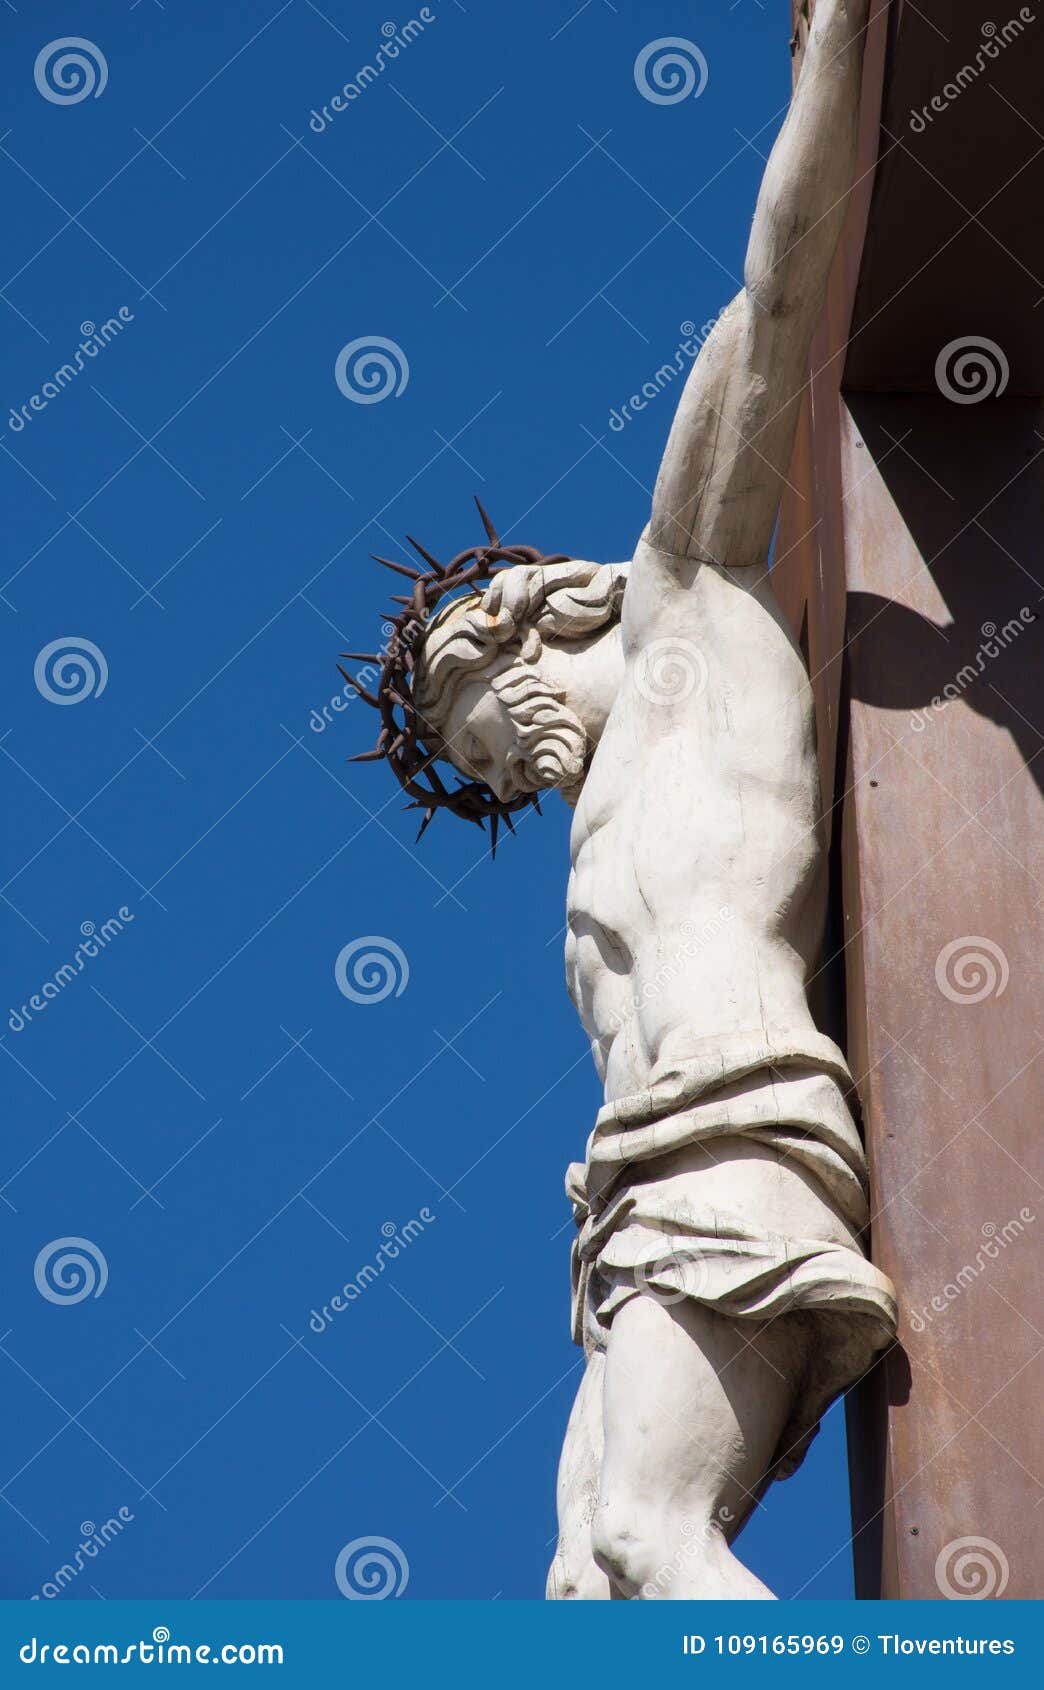 基督在十字架上钉死耶稣 库存图片 - 图片: 24253621